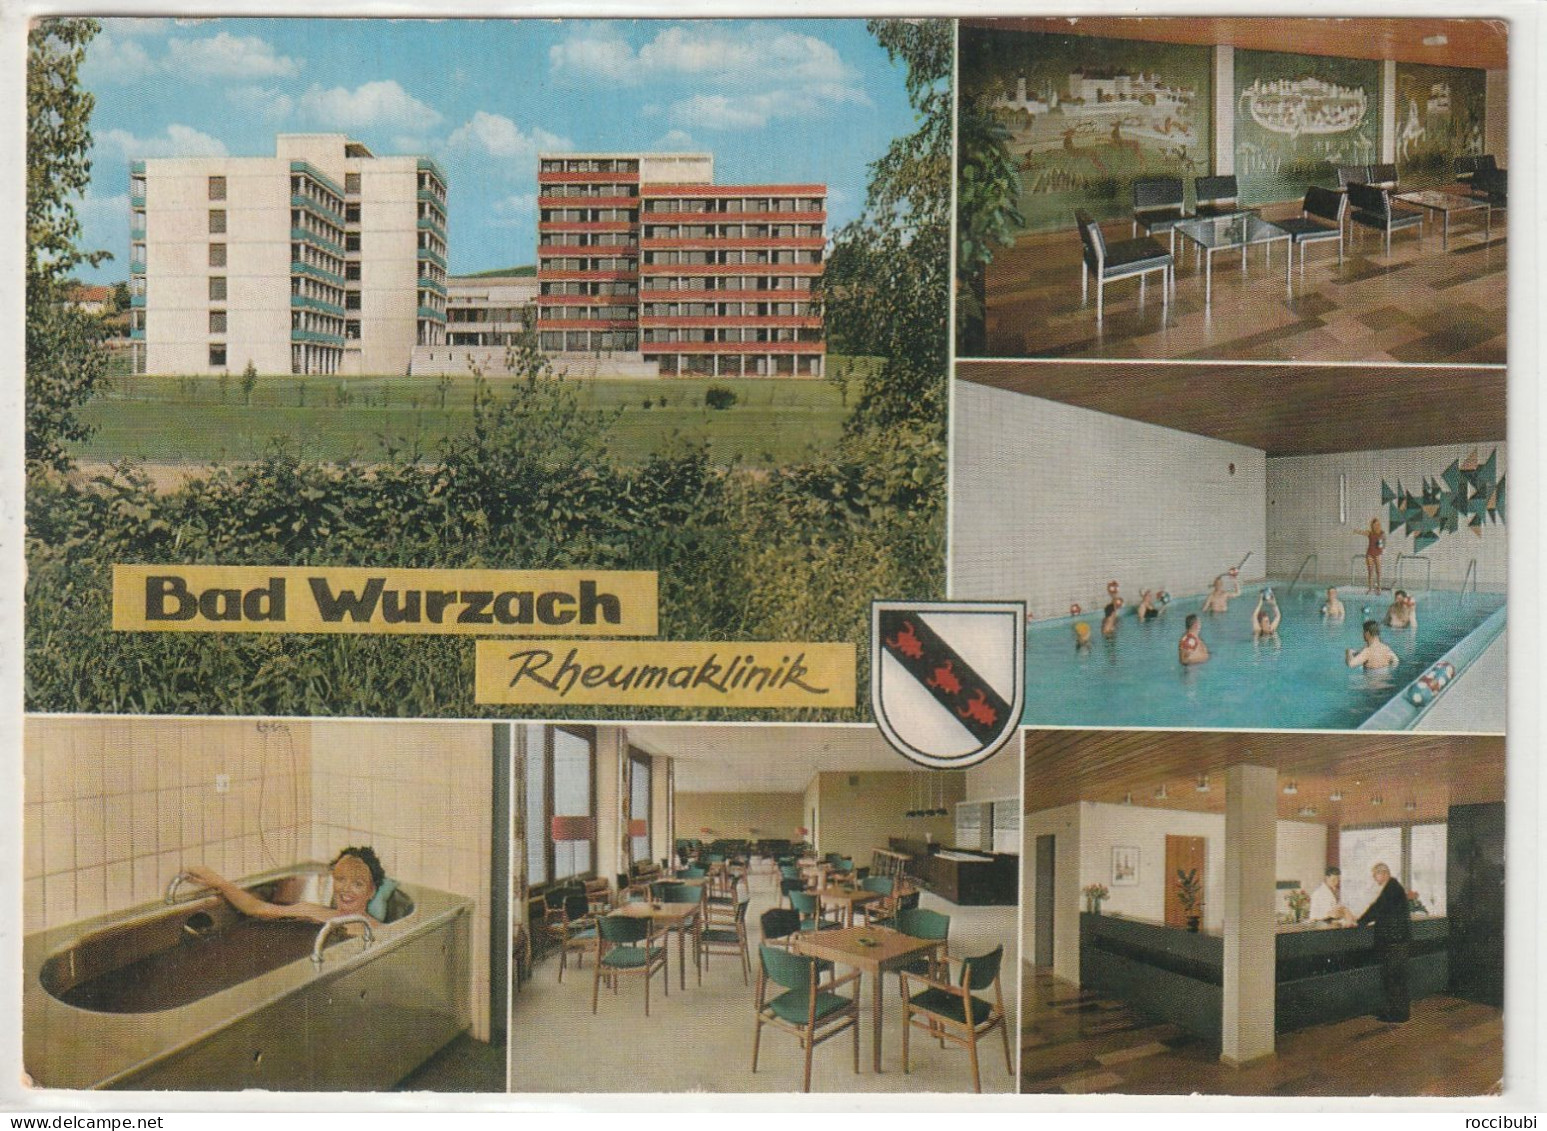 Bad Wurzach - Bad Wurzach